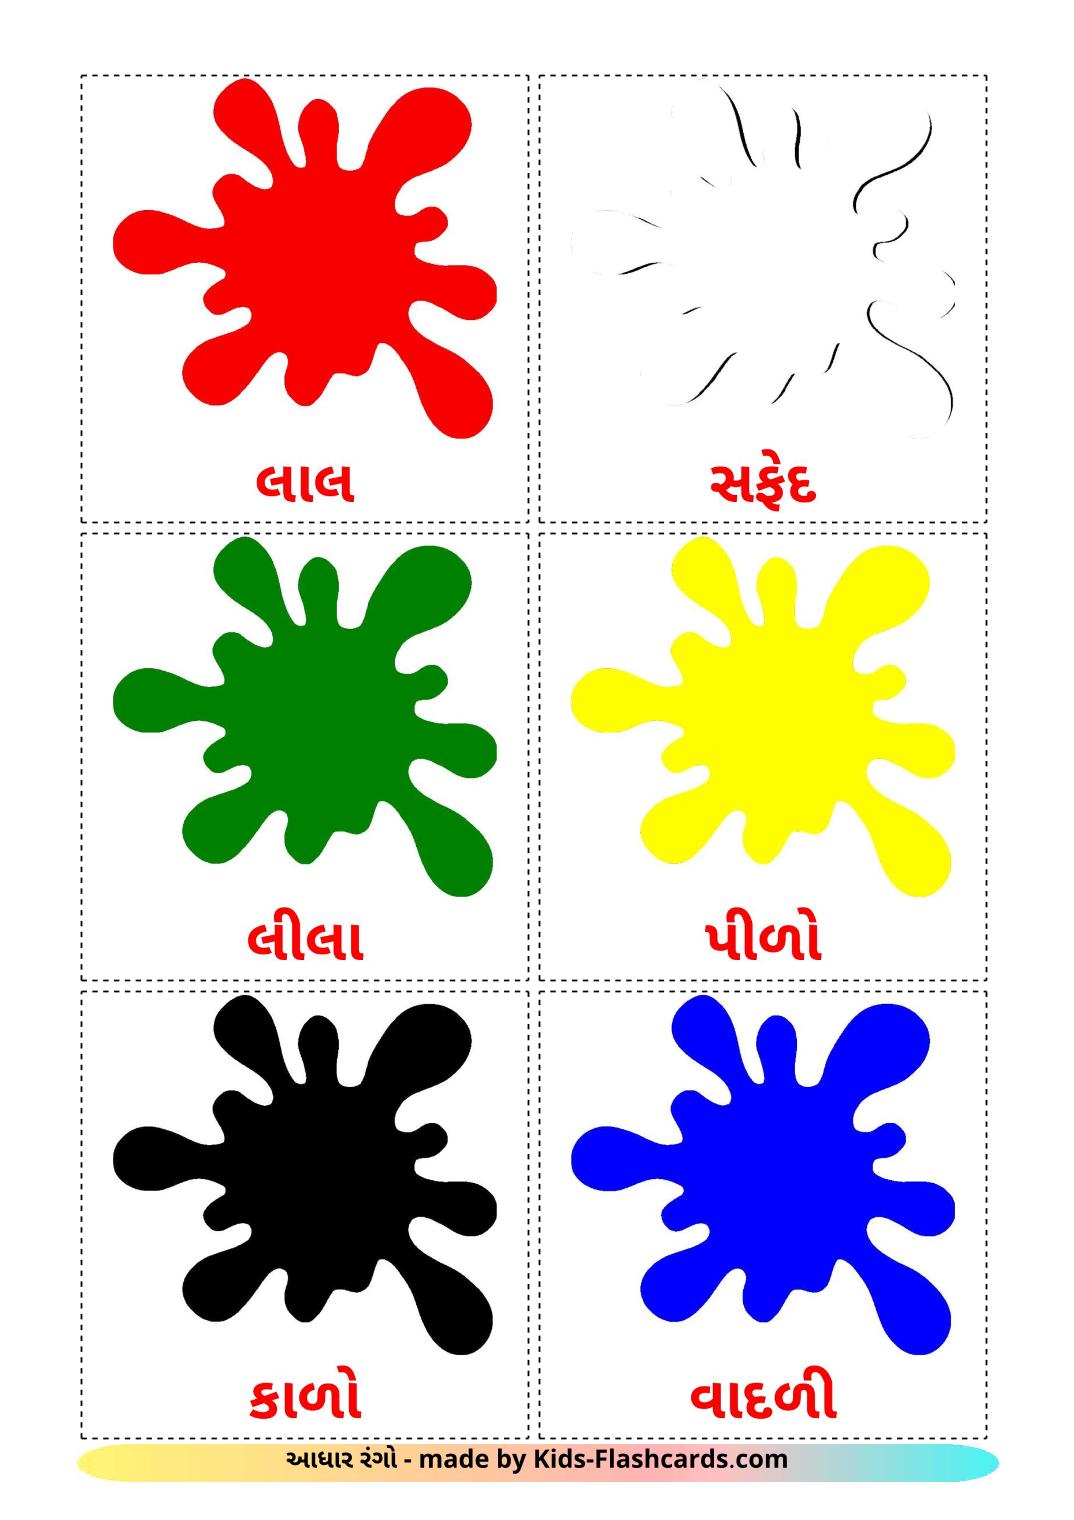 Colores - 12 fichas de gujarati para imprimir gratis 